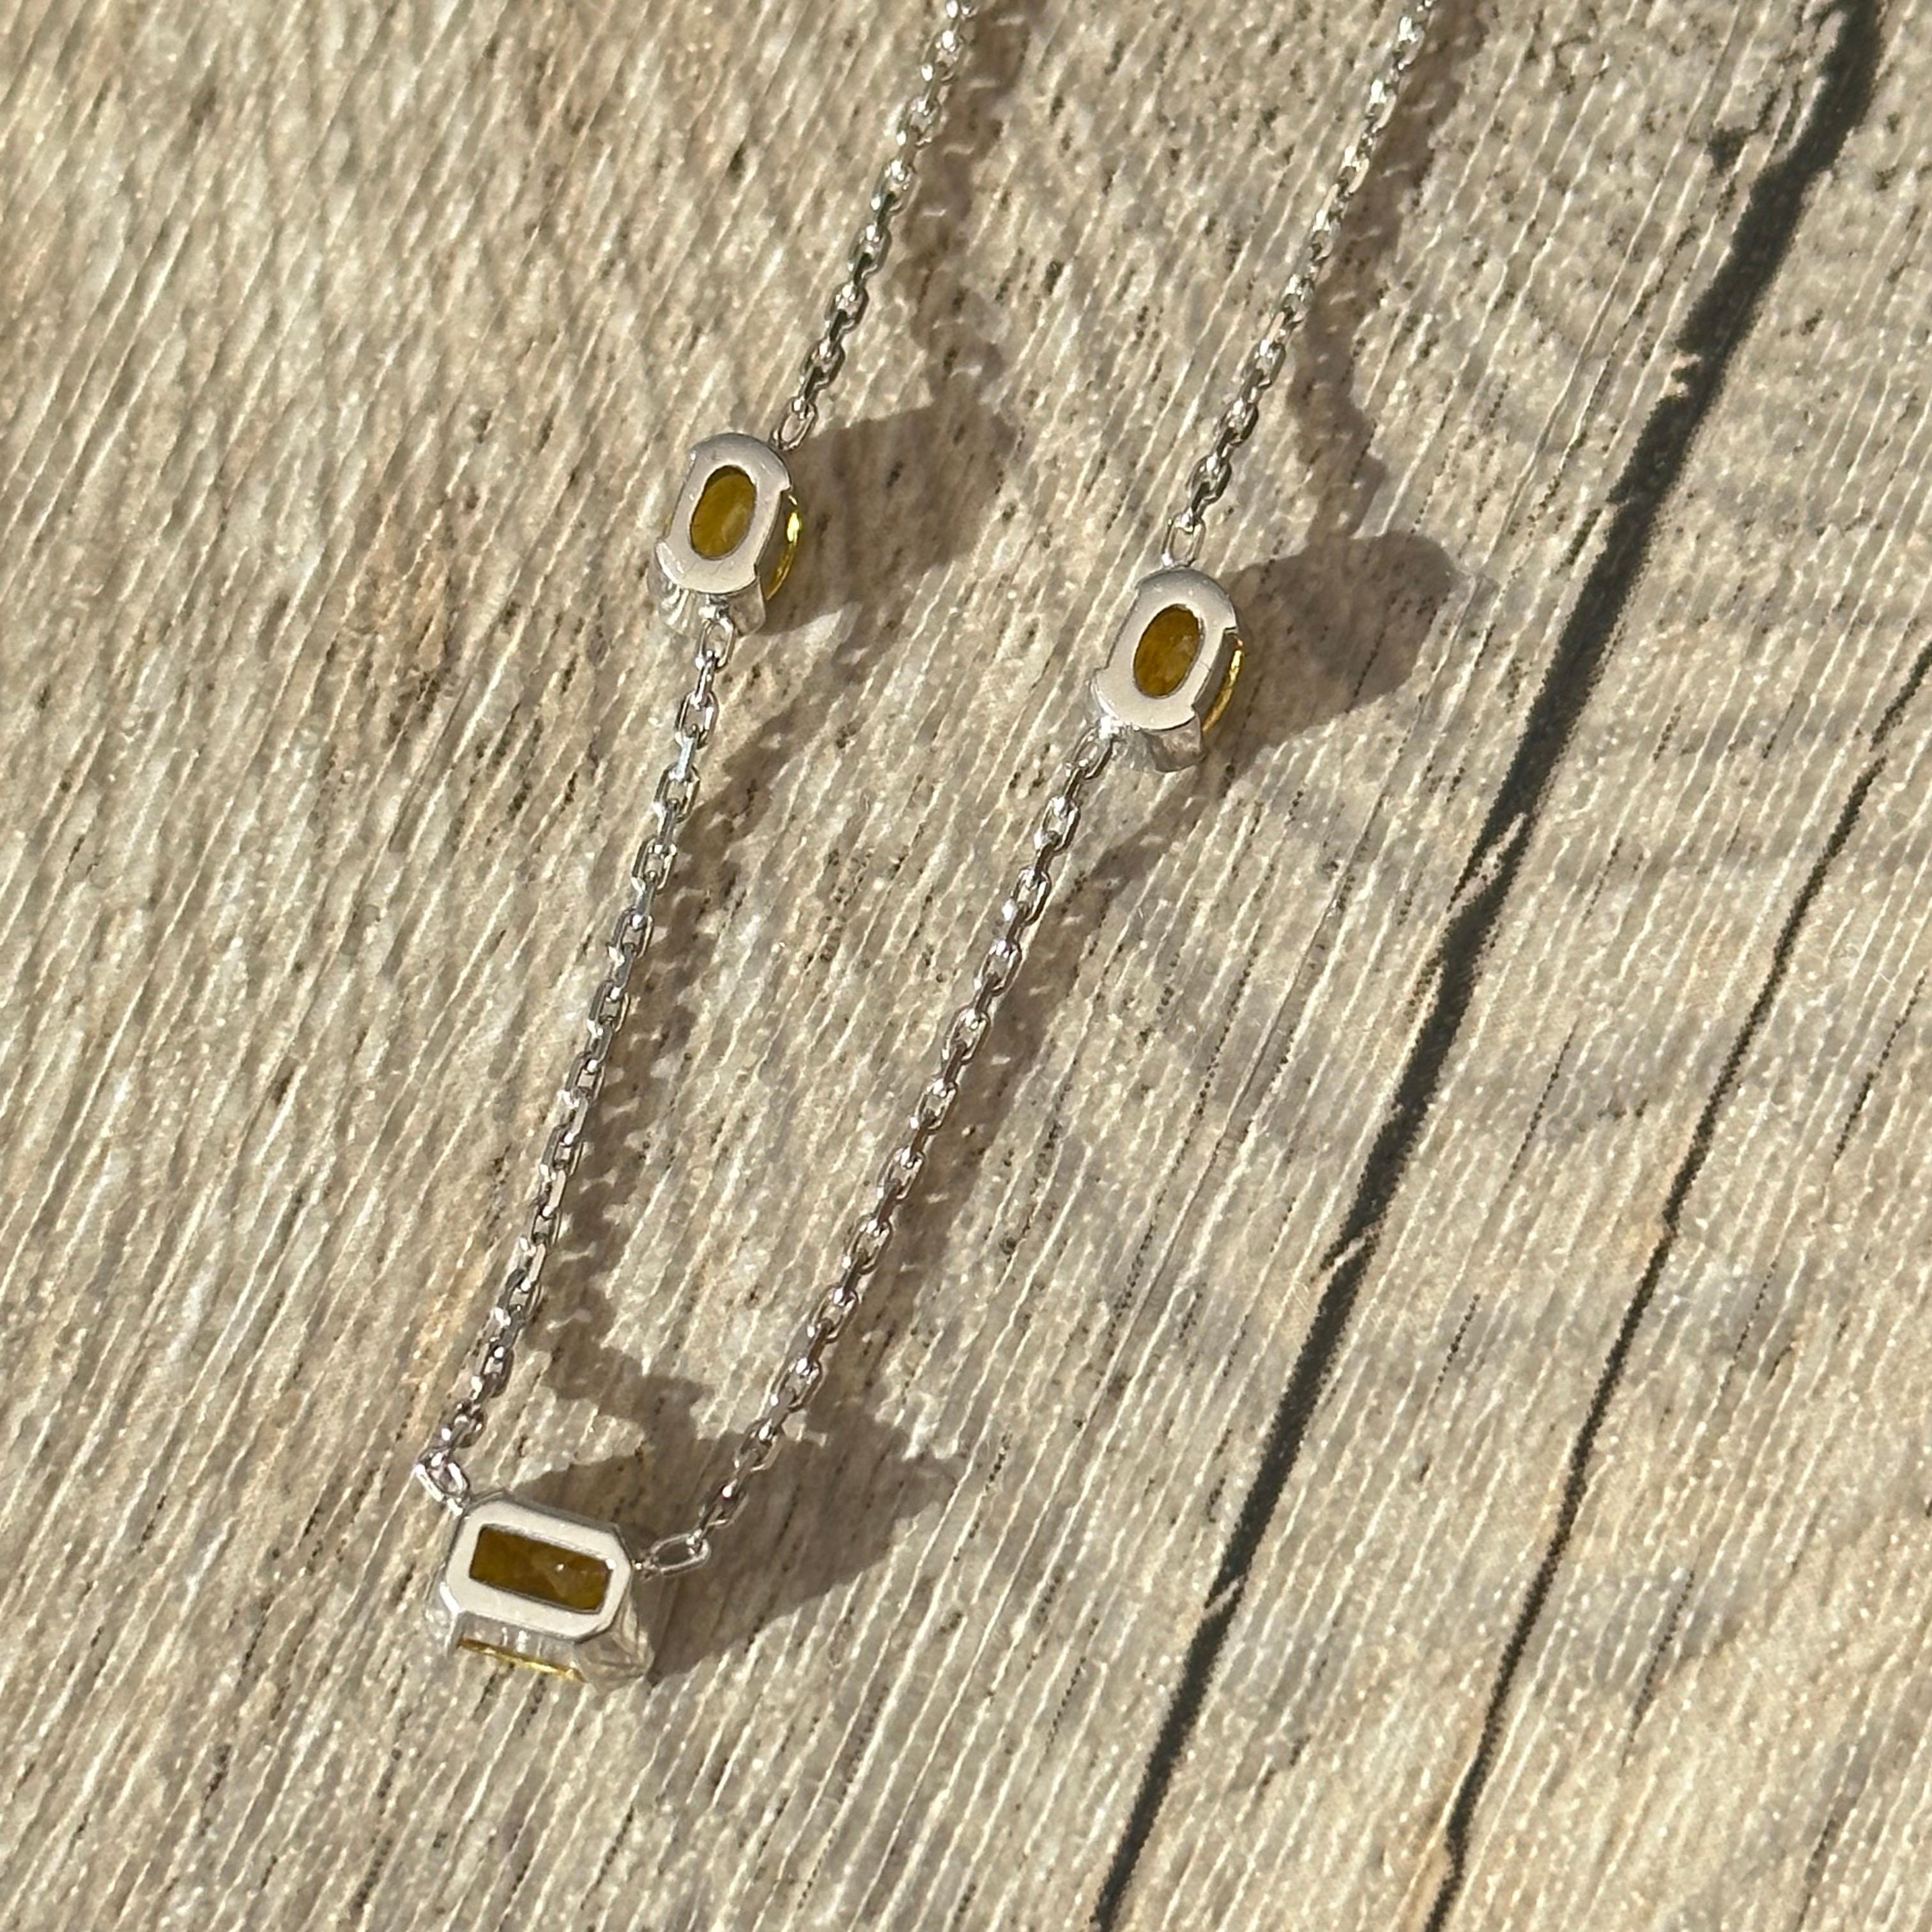 Offrez-vous une pièce unique avec ce magnifique collier saphirs jaunes en or 18 carats, 750 millièmes. Ce bijou d'exception est serti d'un saphir jaune central d'environ 0,80 carat, qui est mis en valeur par deux saphirs jaunes d'environ 0,50 carat